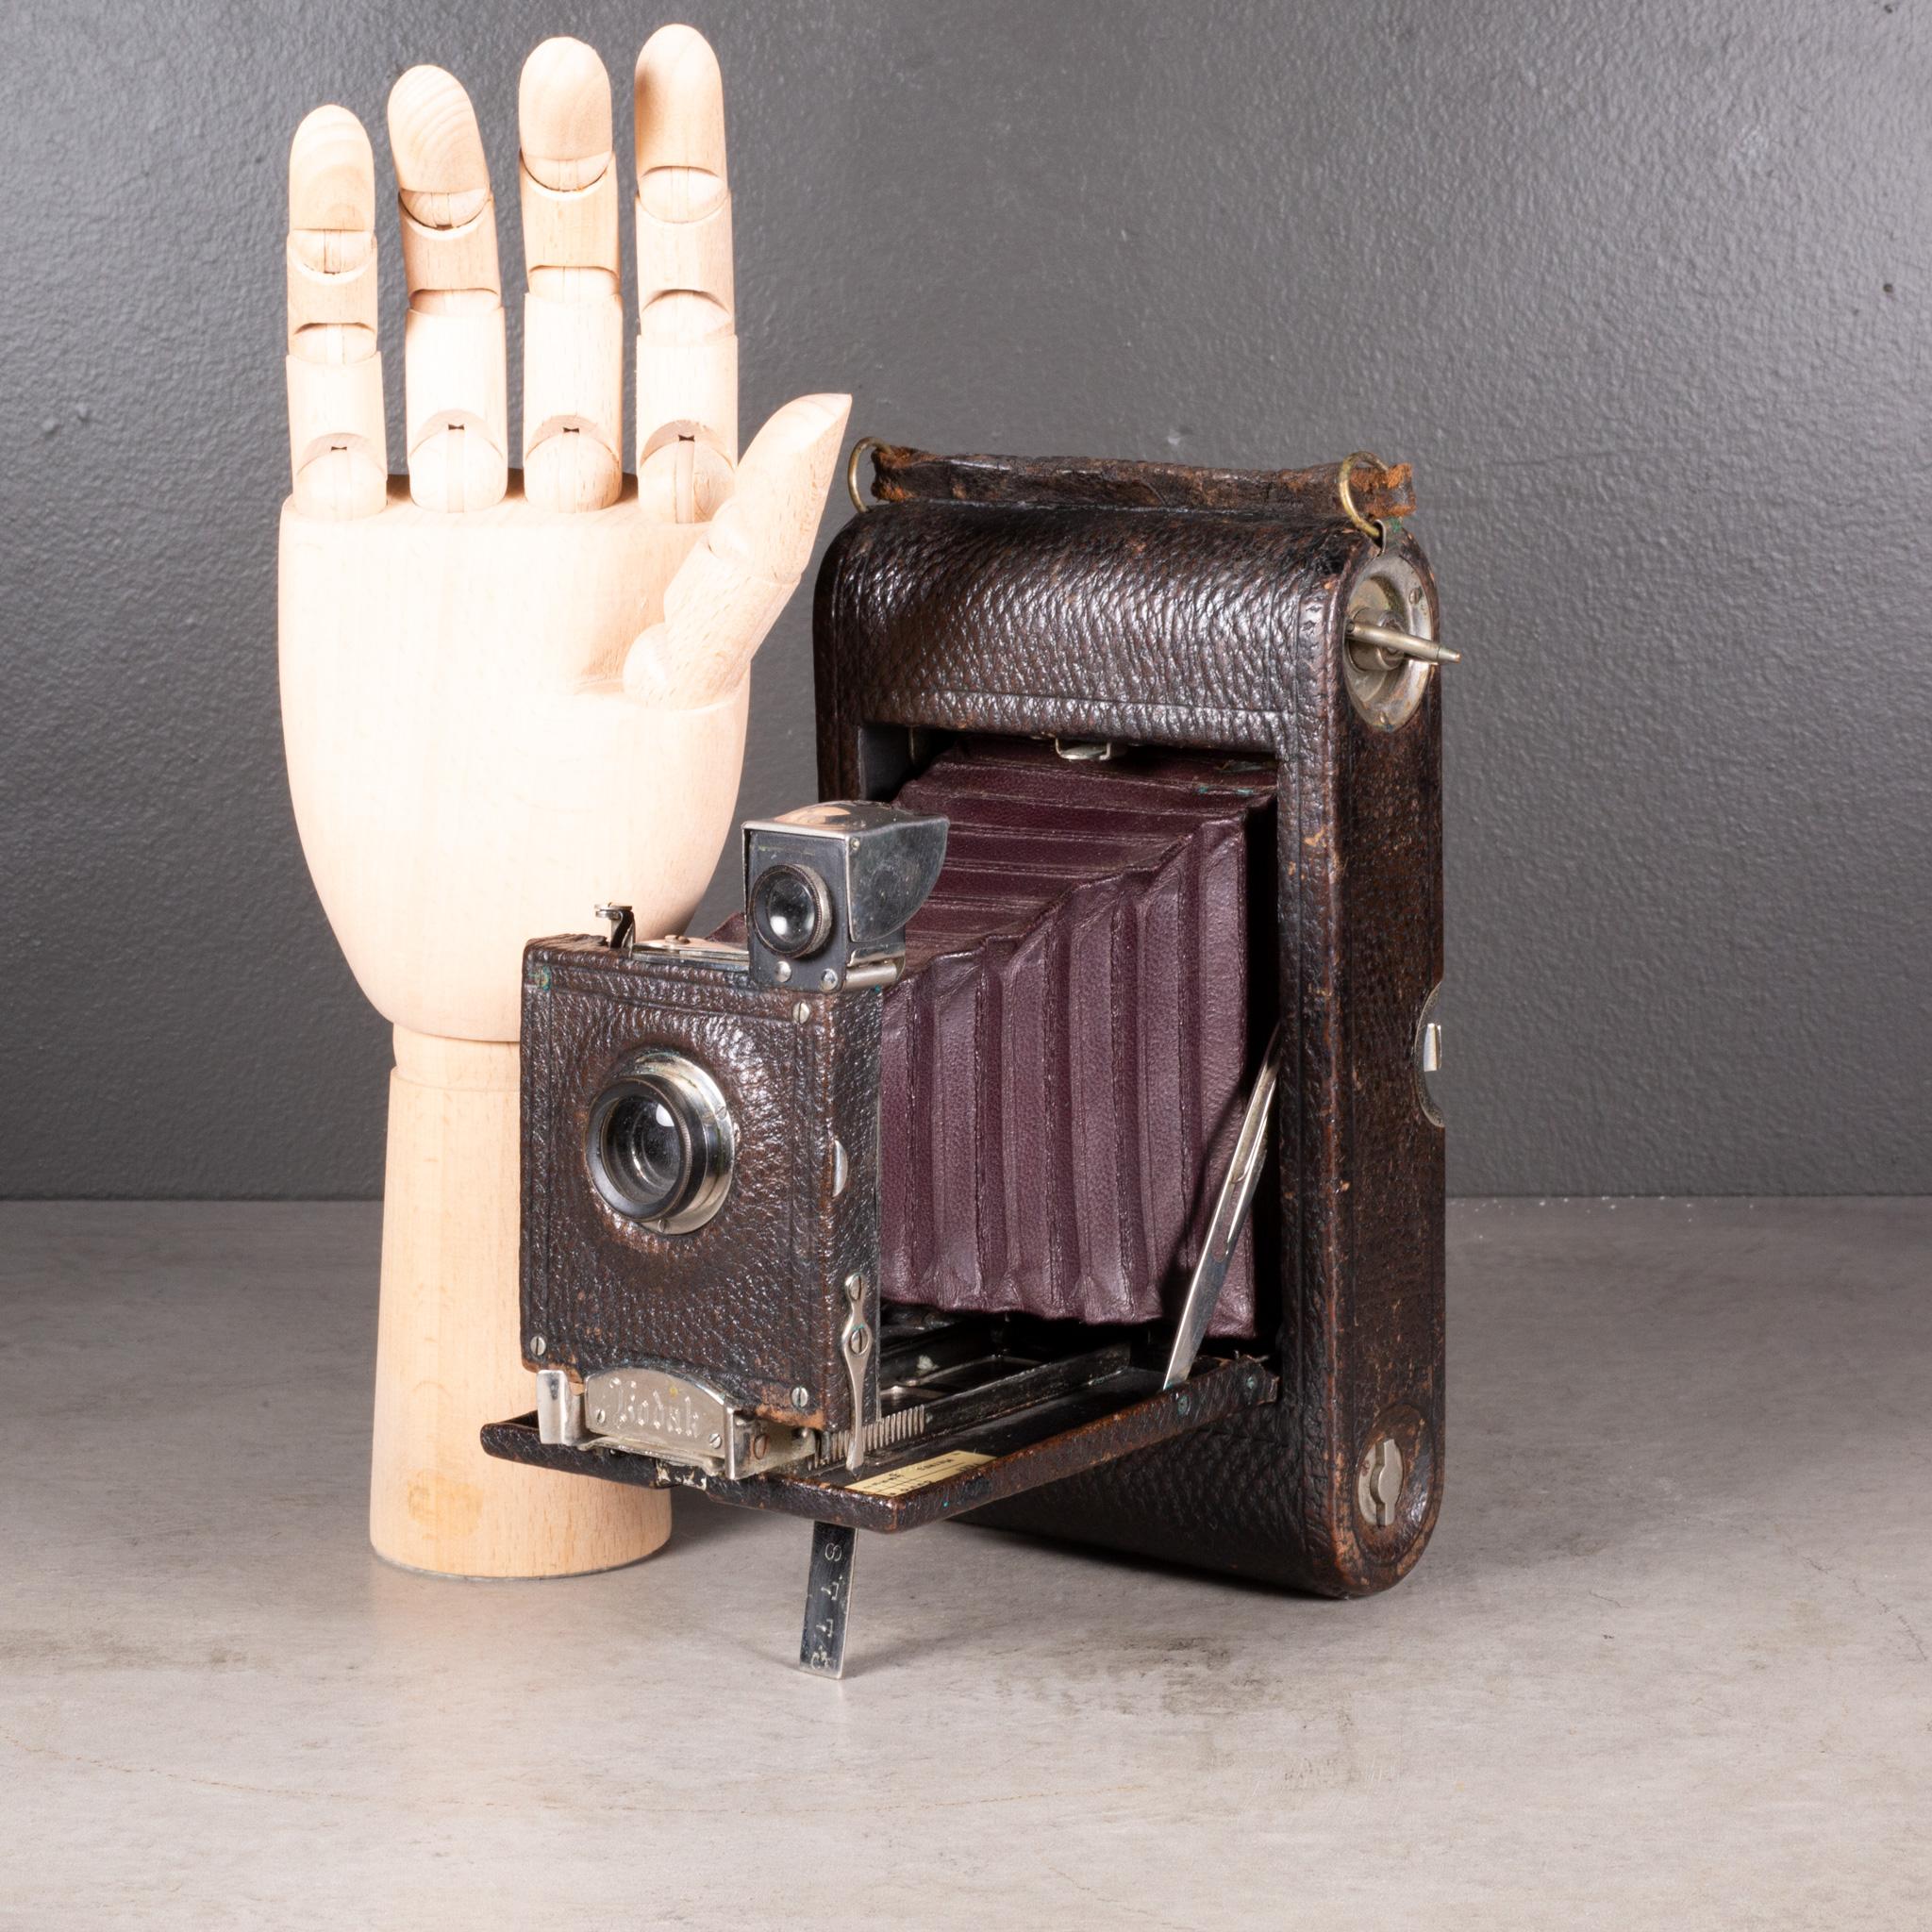 À PROPOS DE  

Le Kodak No.3 Model AB est un modèle précoce. Le boîtier de l'appareil est entièrement en cuir, avec une poignée en cuir et un objectif unique recouvert de cuir. Il se plie en douceur pour atteindre 1,75 pouces.

Vendu en tant